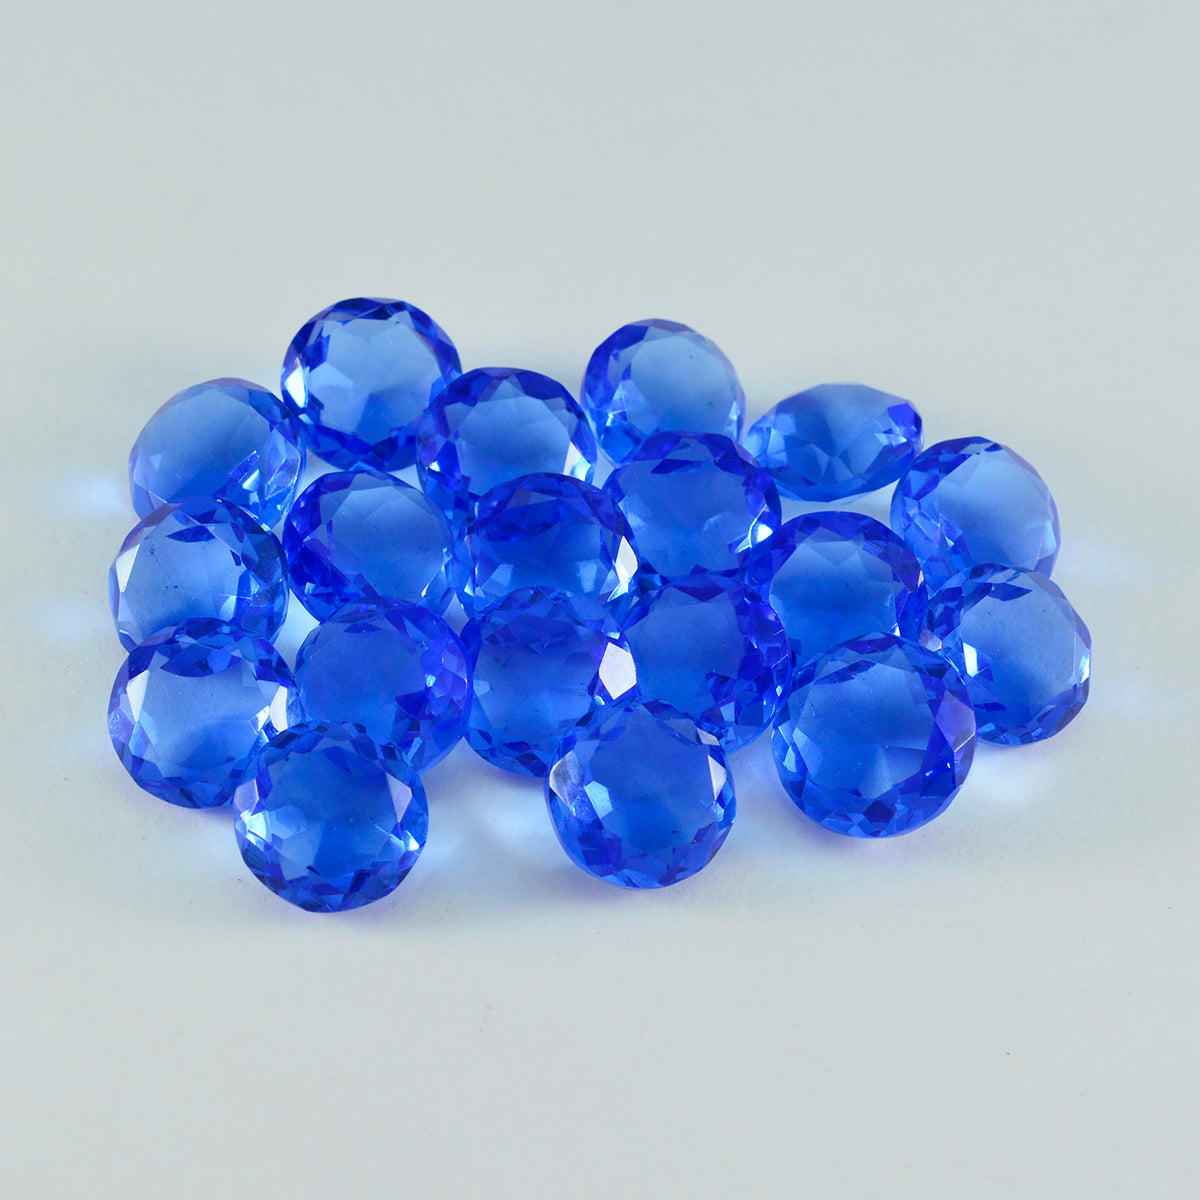 Riyogems 1pc saphir bleu cz facettes 7x7mm forme ronde superbe qualité gemme en vrac